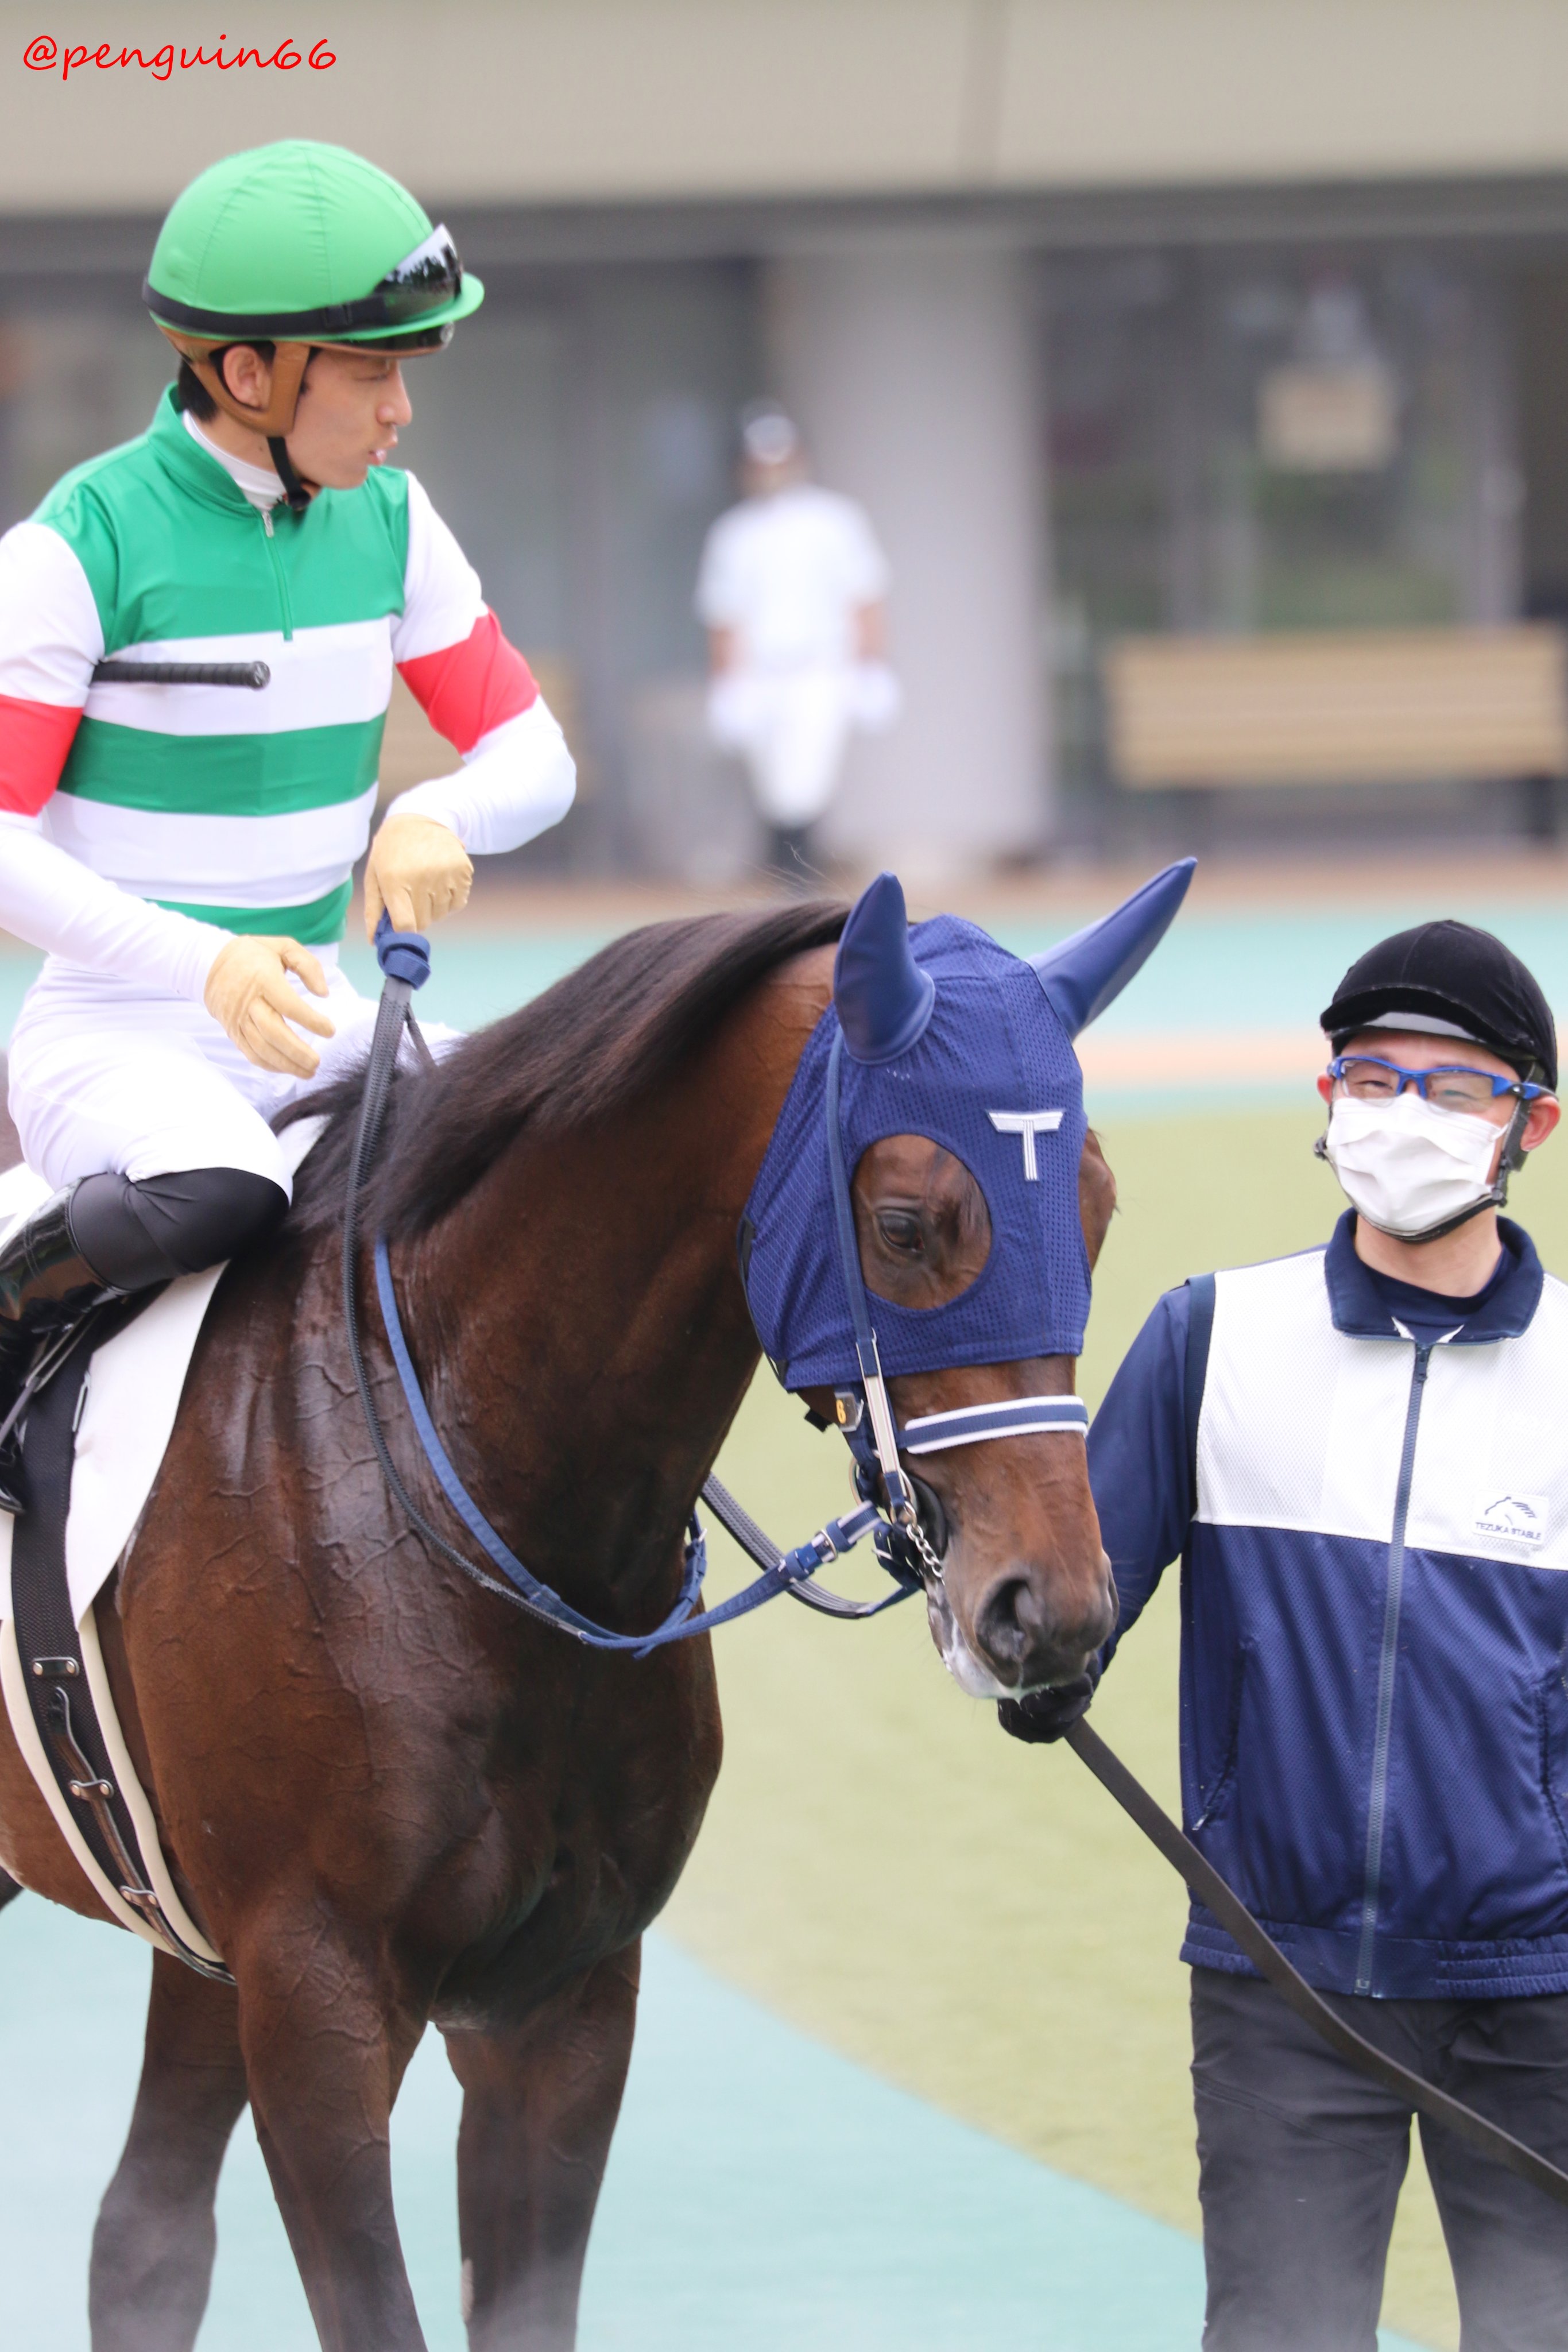 ぺんぎんさん 勝ち上がりおめでとうございます 東京5r 2歳新馬 6ヴァーンフリート リオンディーズの息子さん お母さんは ロスヴァイセさんです 手塚貴久 厩舎 馬主 有限会社キャロットファーム 生産者 ノーザンファーム ヴァーンフリート